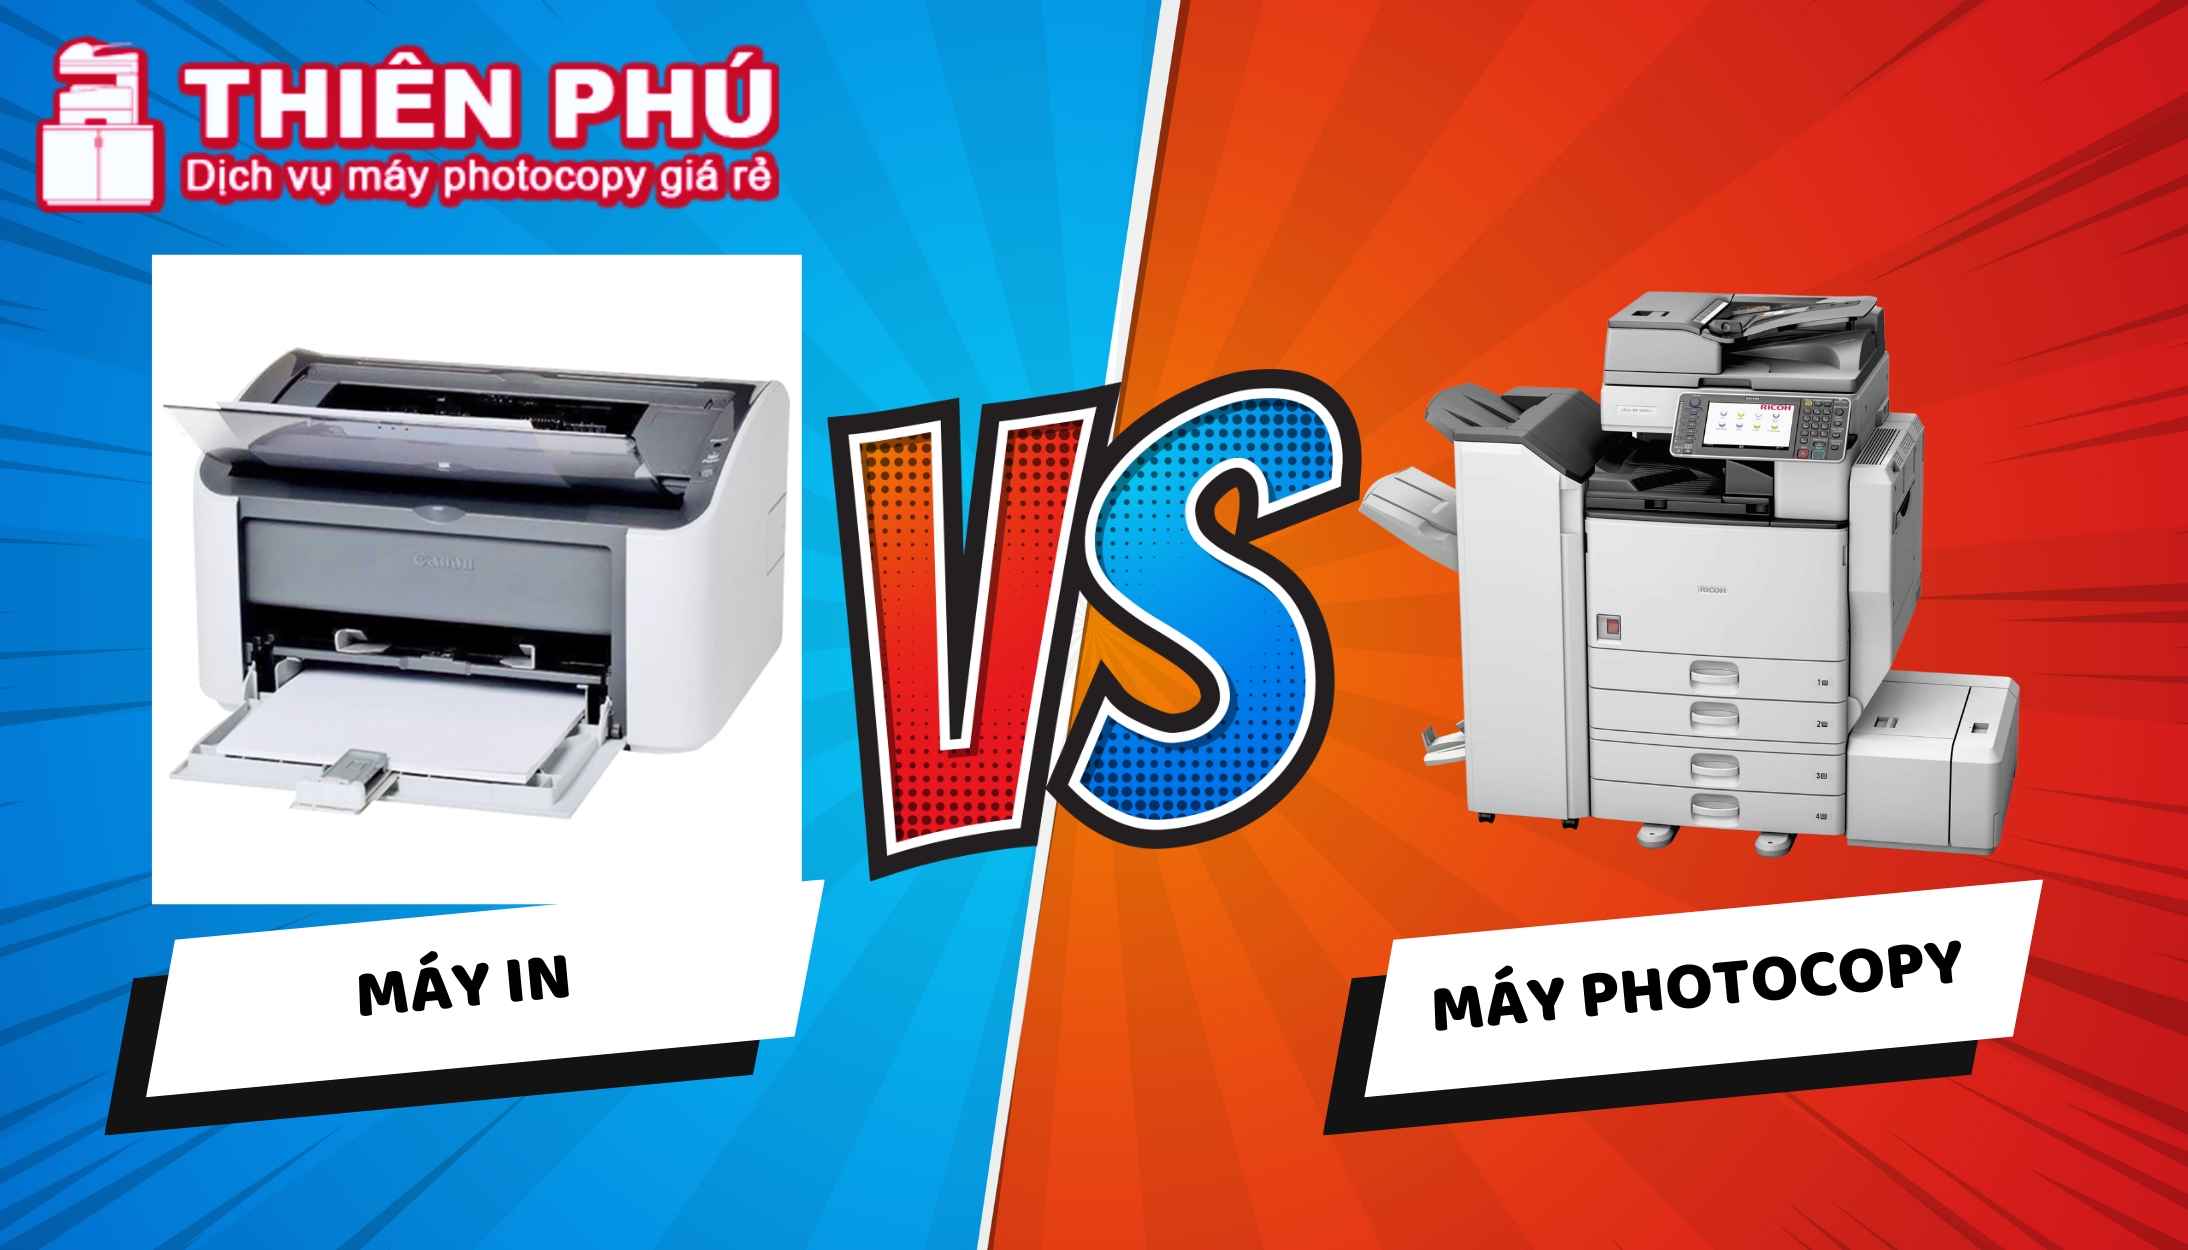 Nên mua máy in hay máy photocopy để tiết kiệm chi phí?